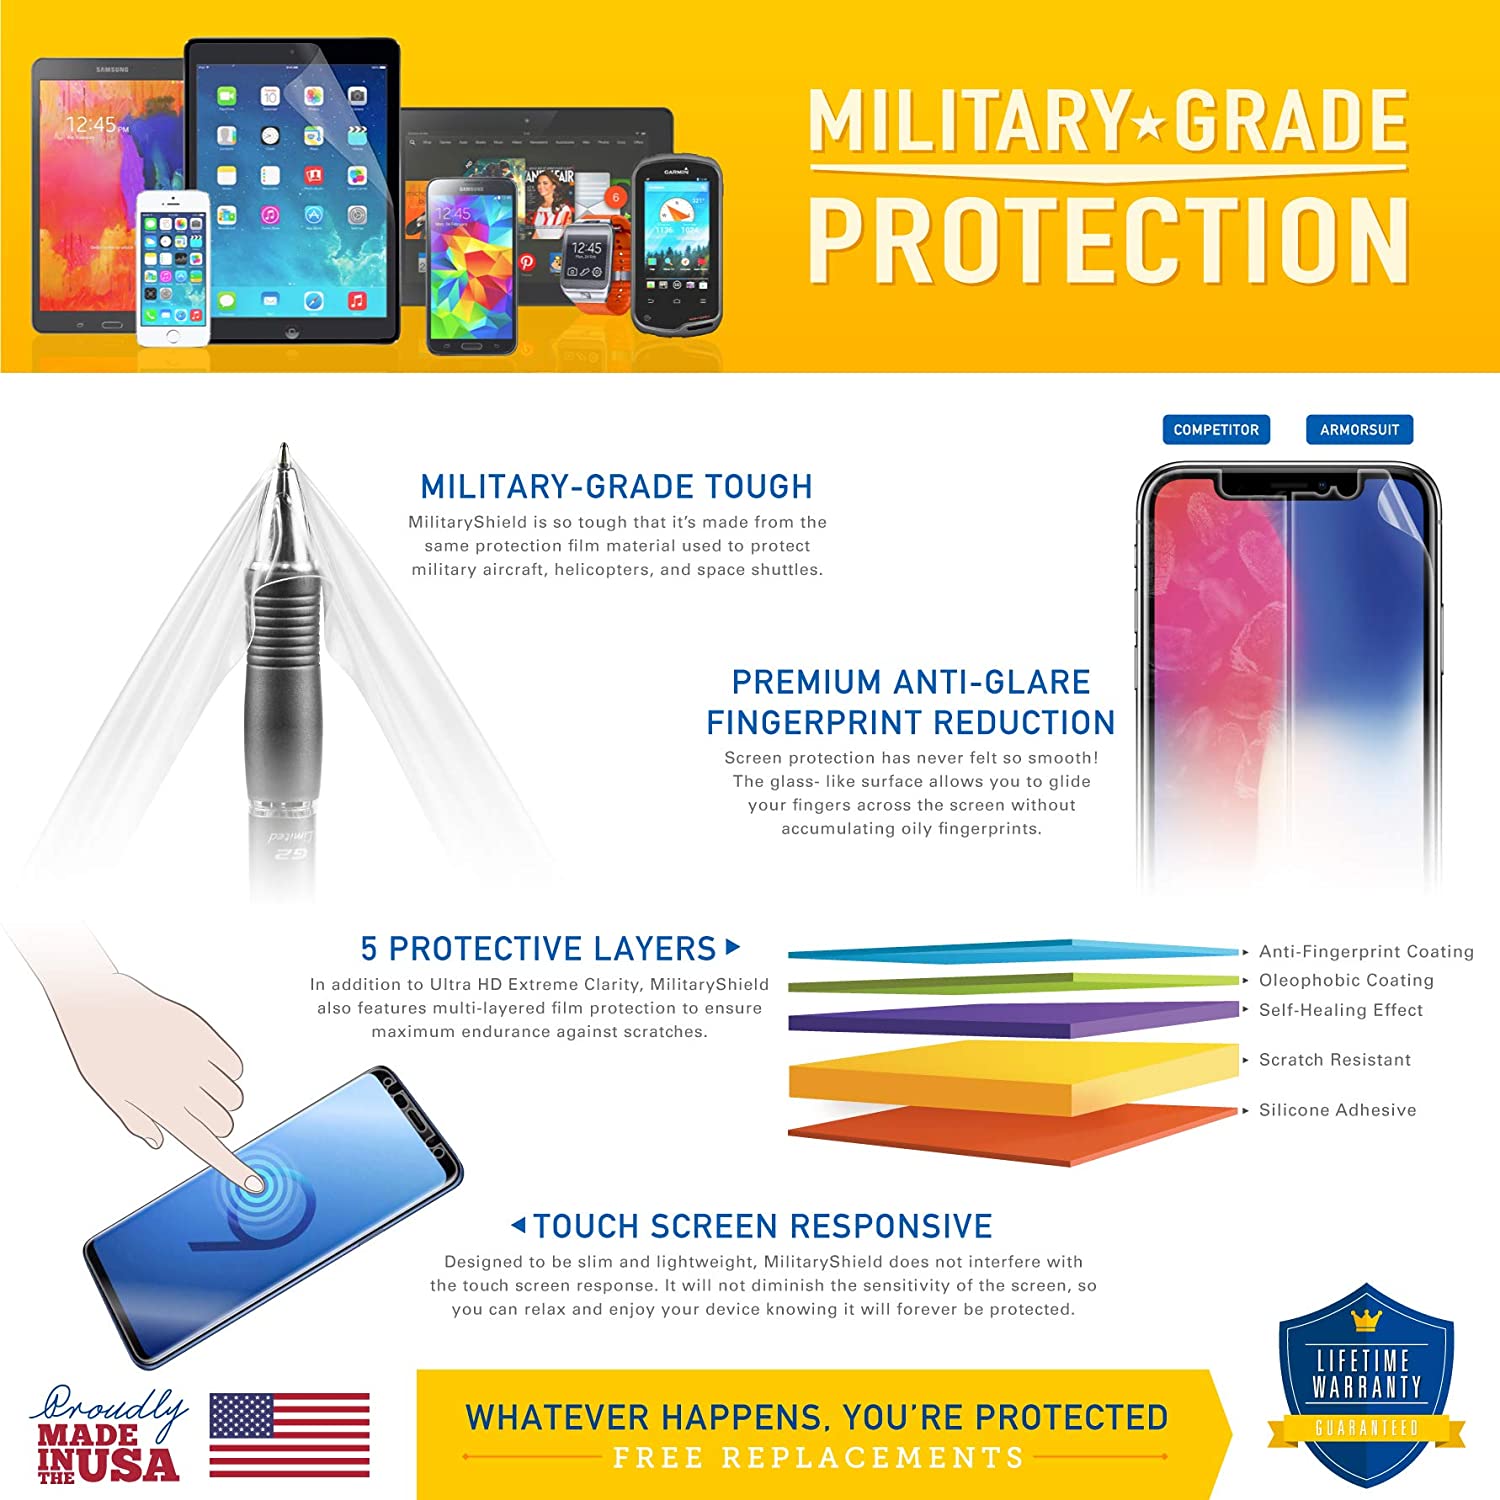 [2 Pack] Motorola Moto G4 Play Matte Screen Protector